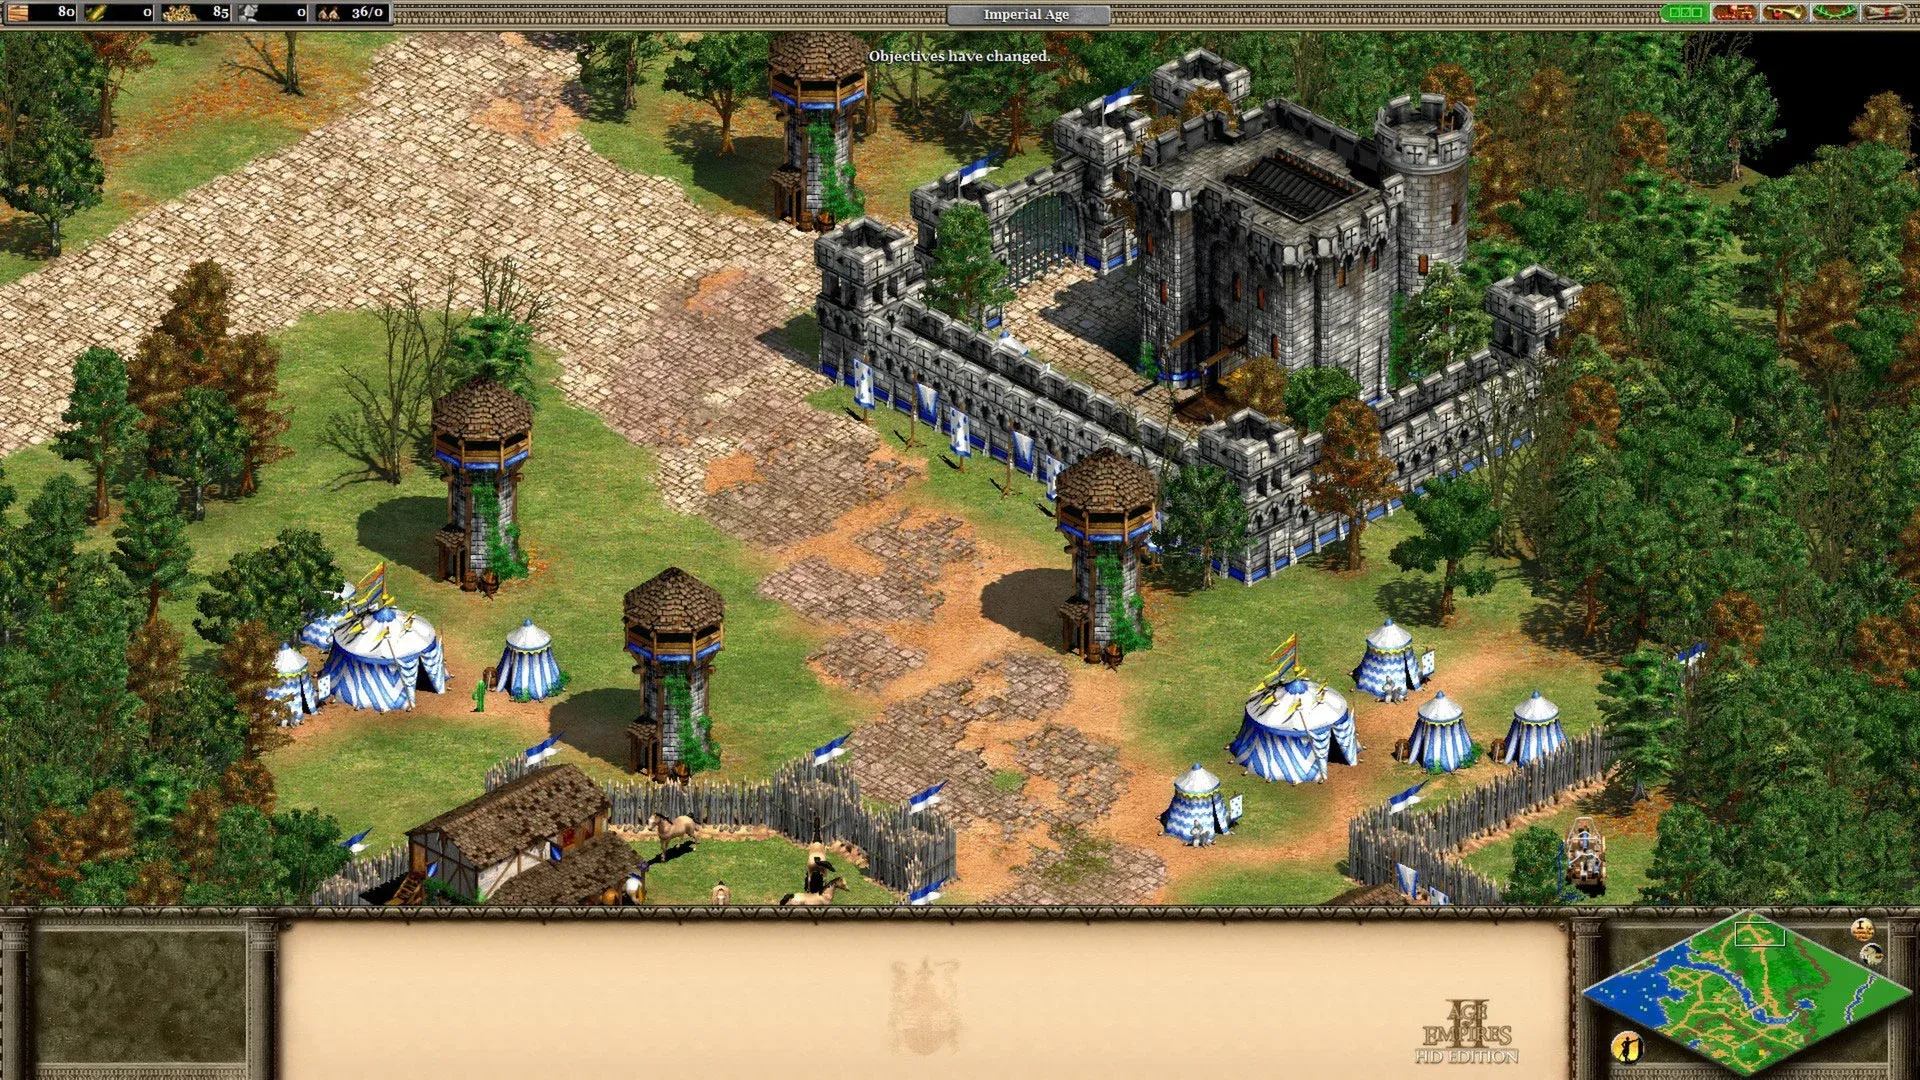  Foto3age2 Codigo Age Of Empires 2 Detalhes Jogabilidade Estrategia.webp